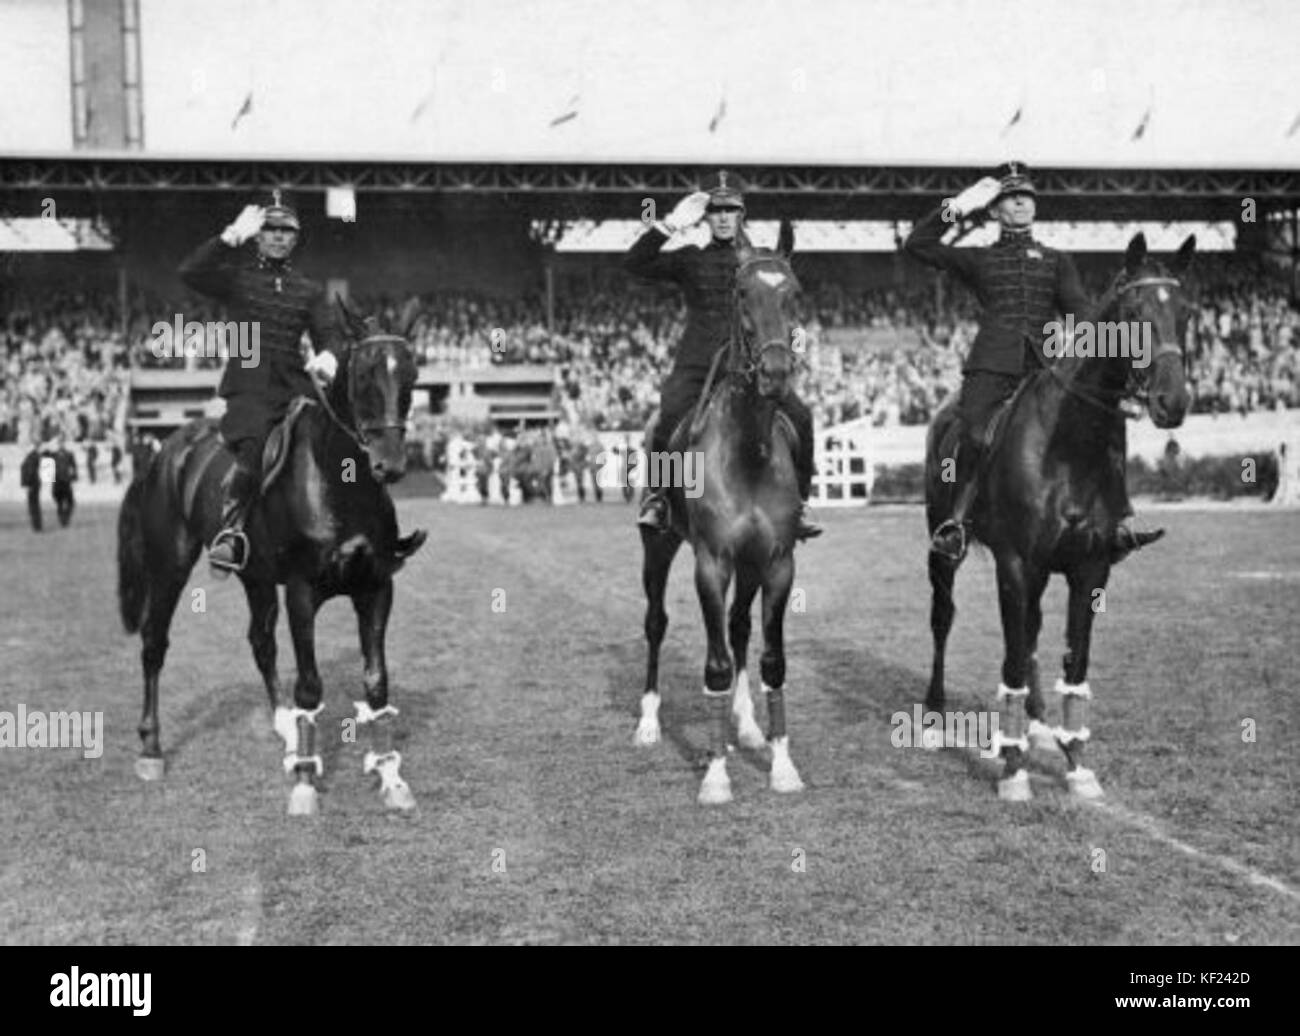 Nederlandse landenteam eventing Olympische Spelen 1928 Stock Photo